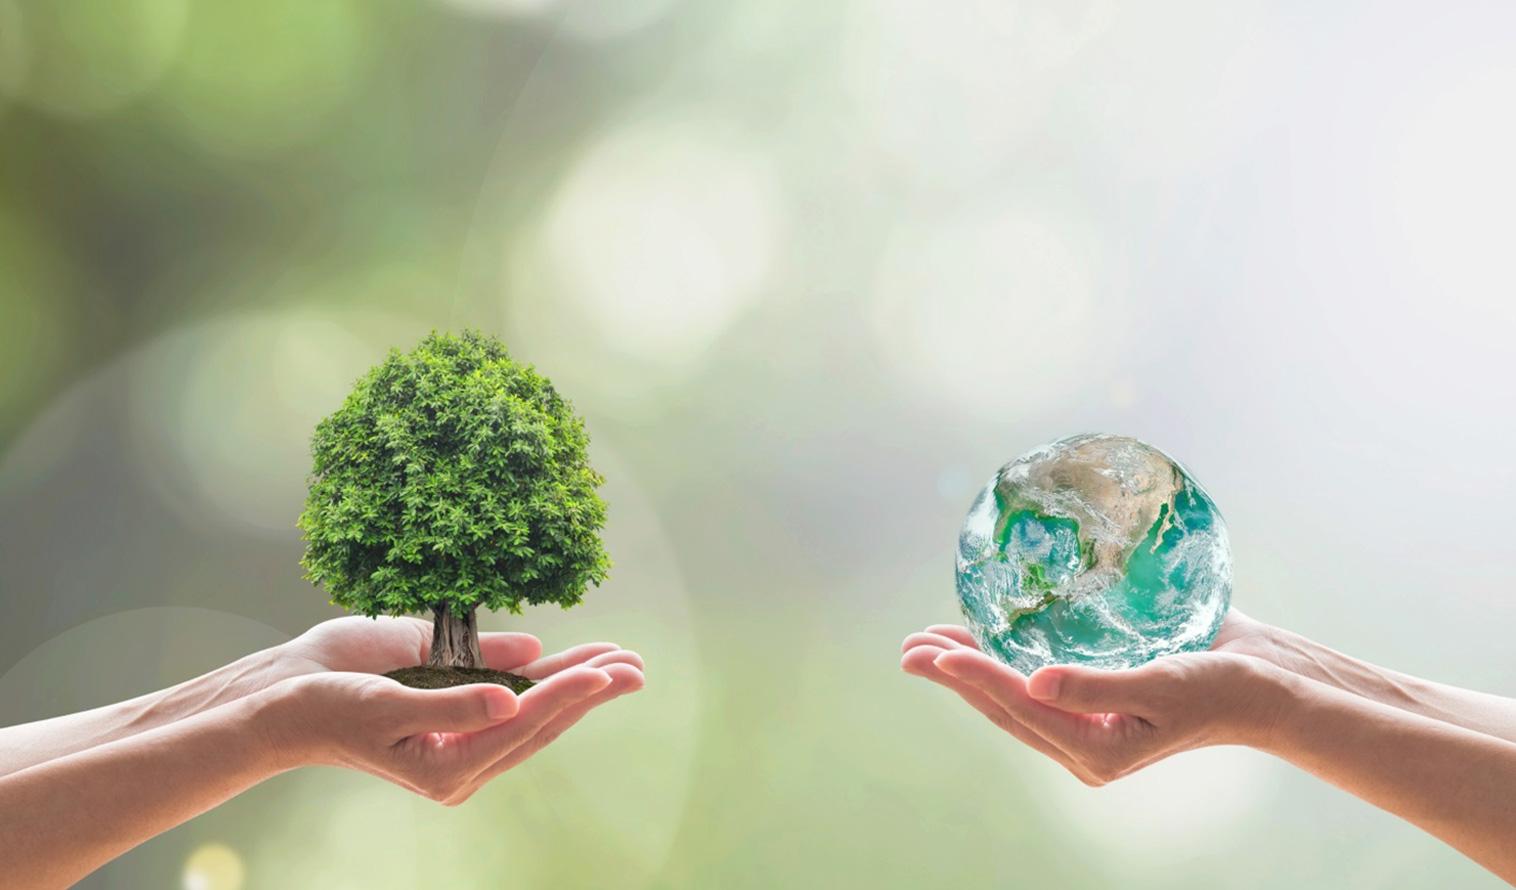 Zwei Hände halten symbolisch einen Modellbaum und den Planeten Erde gegenüber.